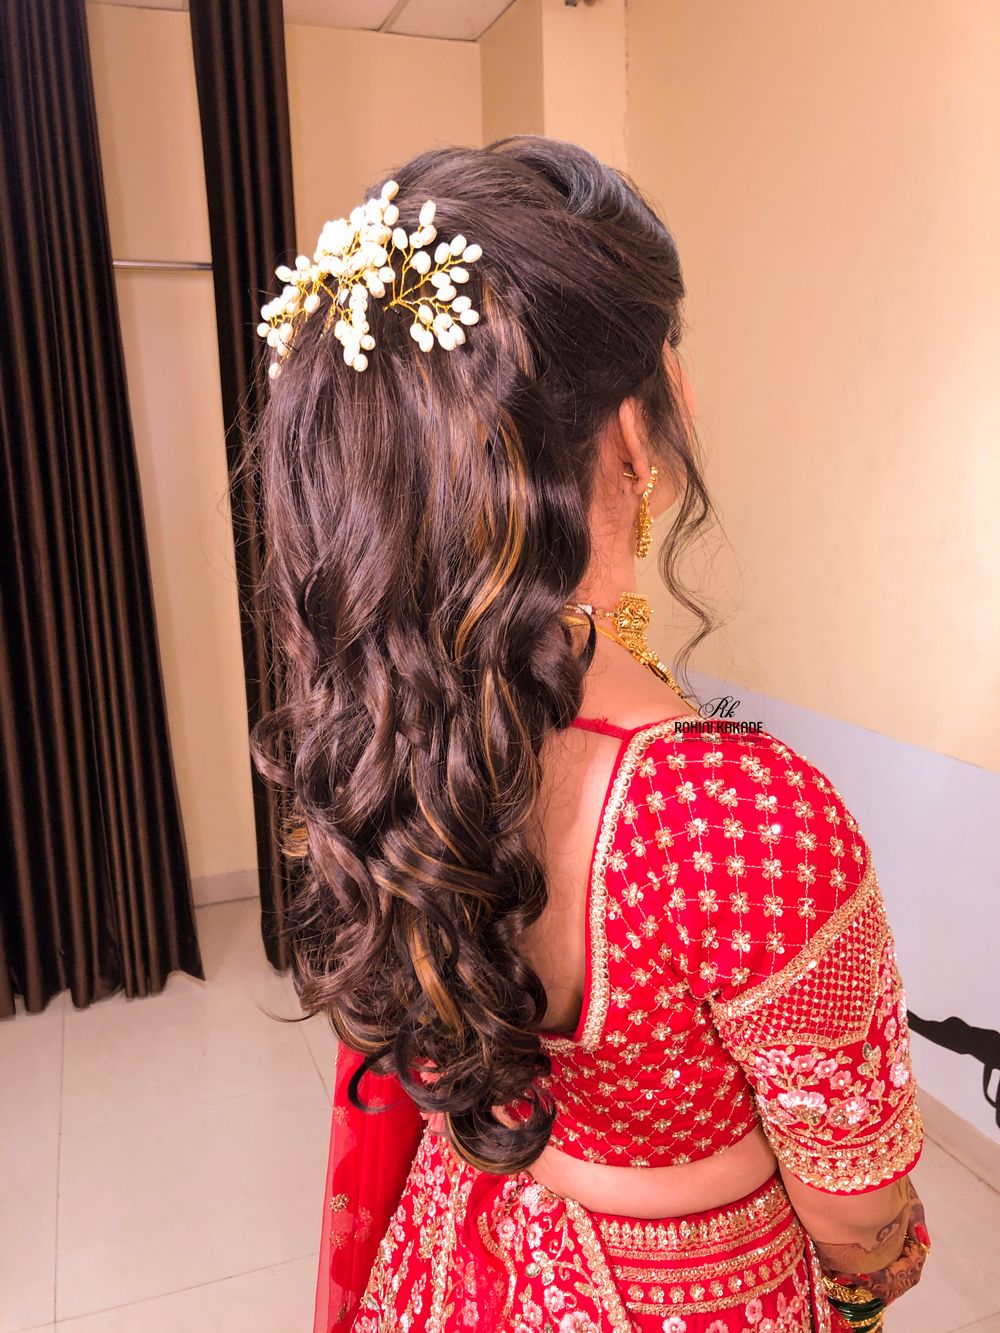 Photo By Rohini Kakade Bridal Makeup Artist - Bridal Makeup